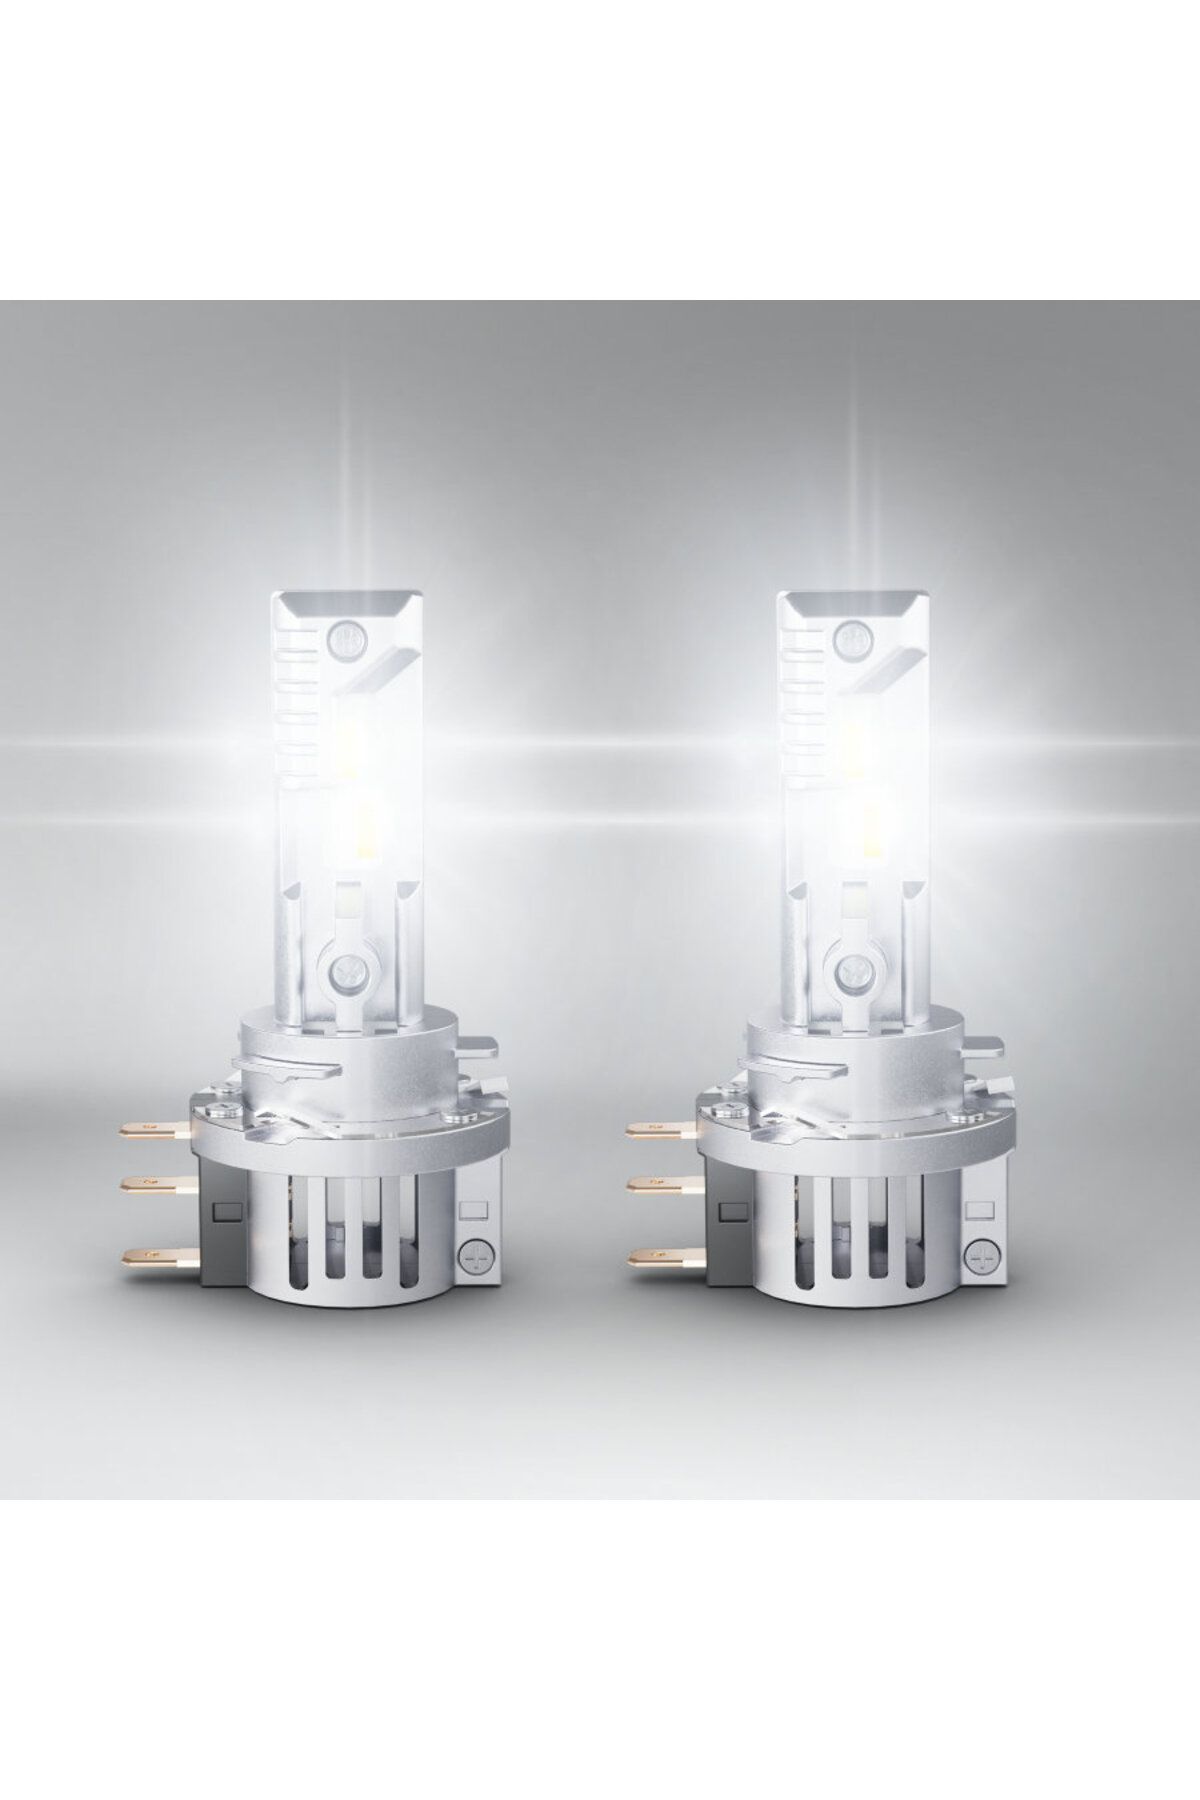 Osram H7 Led Xenon %300 Bright 4 Yıl Garantili 19w - 12v (2adet Far Için)  Fiyatı, Yorumları - Trendyol